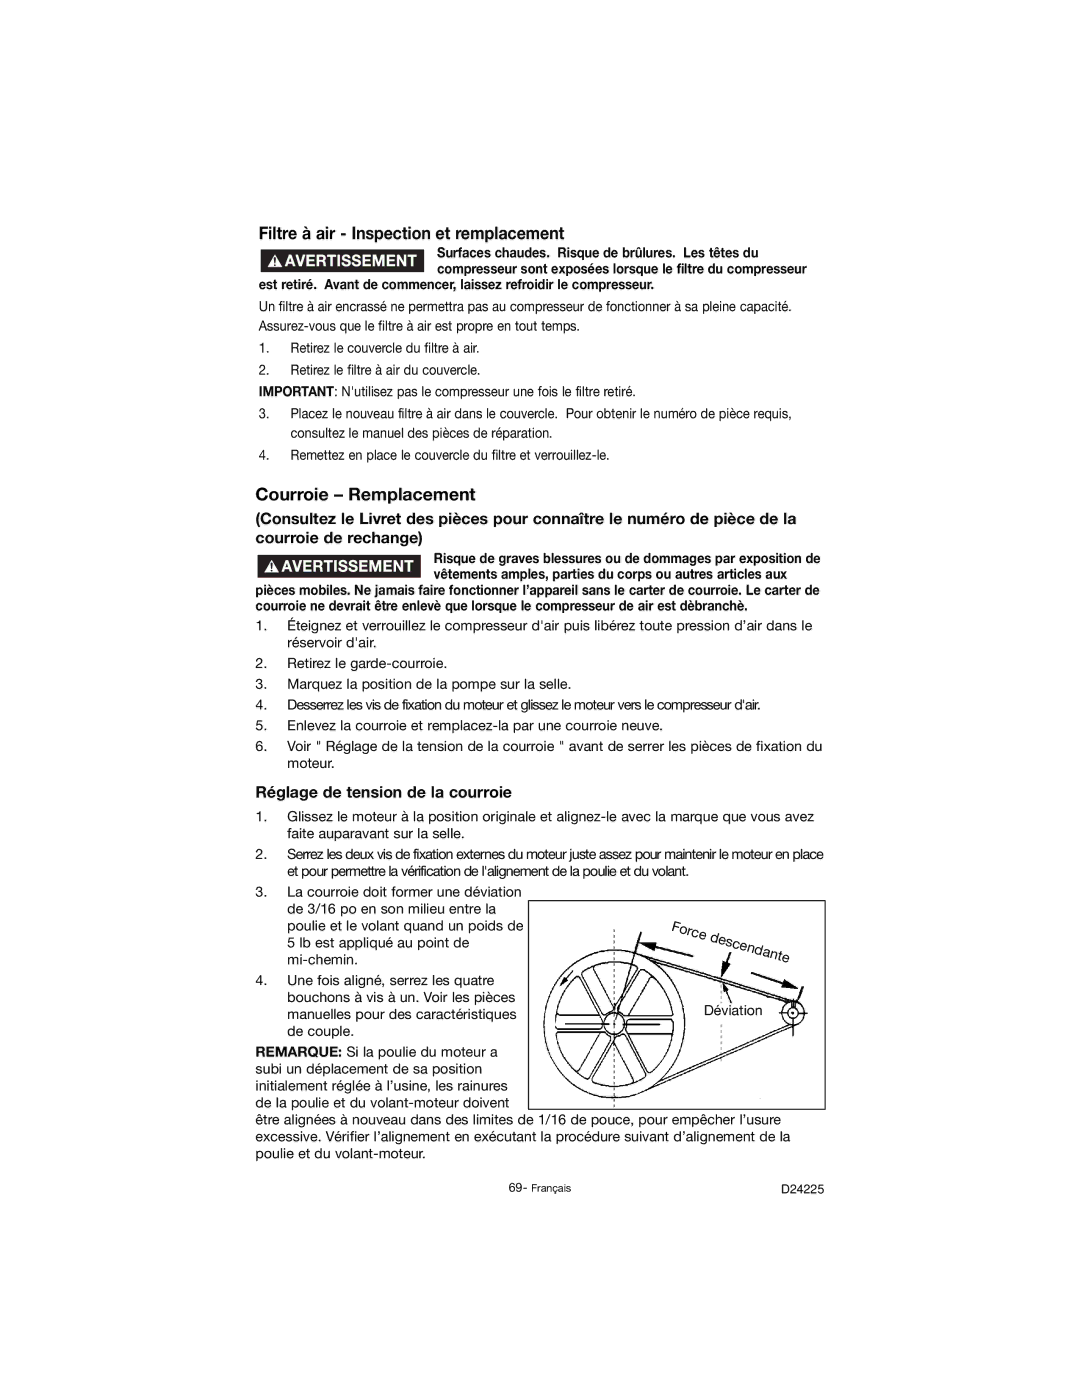 Porter-Cable D24225-049-2 instruction manual Filtre à air Inspection et remplacement, Courroie Remplacement 